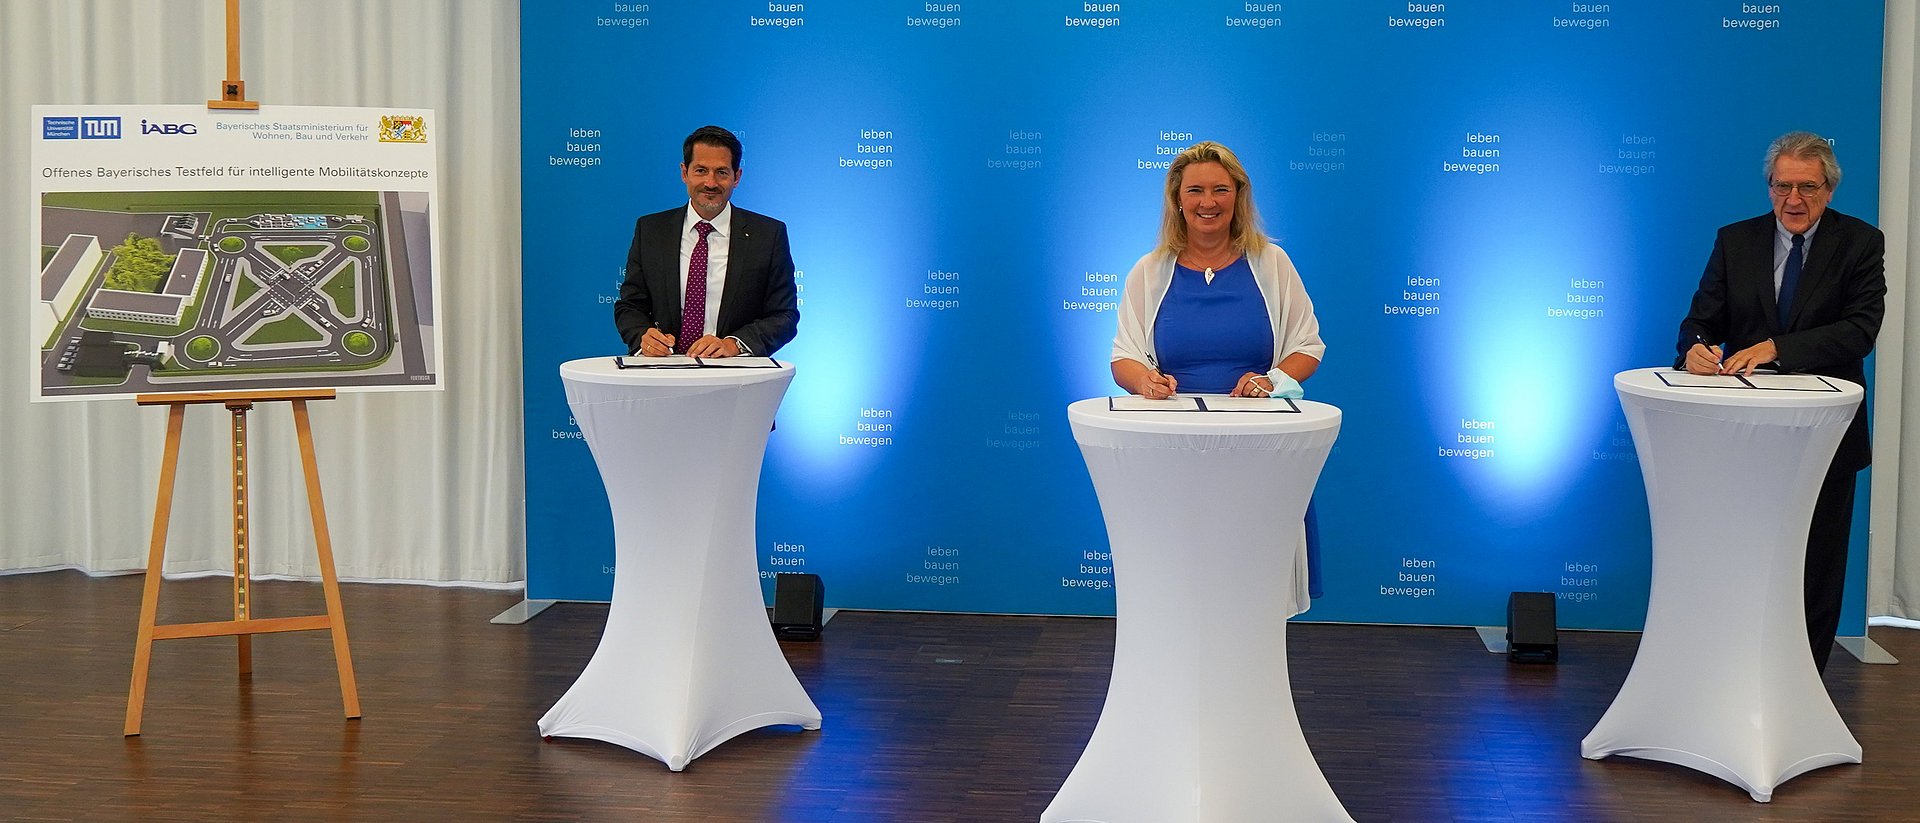 TUM-Präsident Thomas F. Hofmann, die Bayerische Verkehrsministerin Kerstin Schreyer und  IABG-Geschäftsführer Rudolf F. Schwarz unterzeichnen die Vereinbarung zum neuen Testfeld.